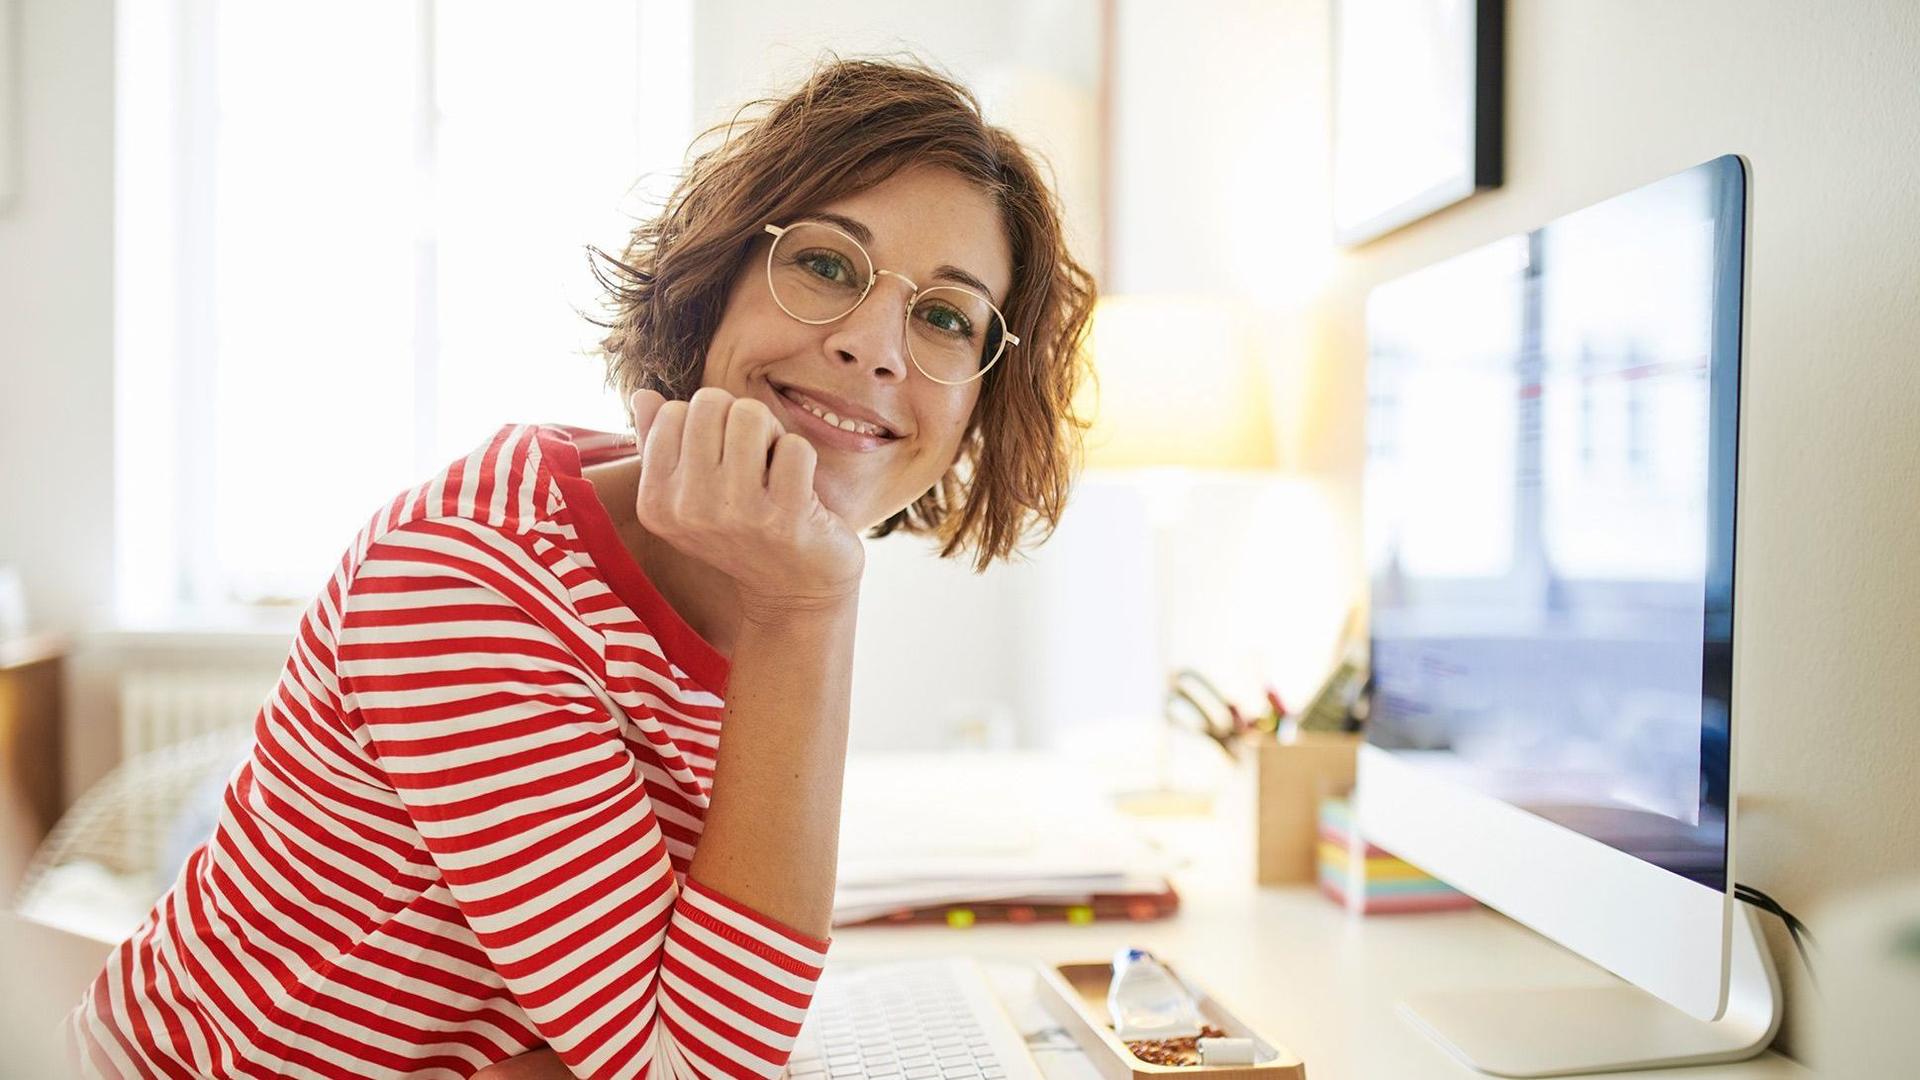 Eine junge Frau mit Brille und Ringelpulli sitzt an ihrem Schreibtisch. Sie hat ihren Kopf auf ihrer Hand abgestützt und lächelt in die Kamera